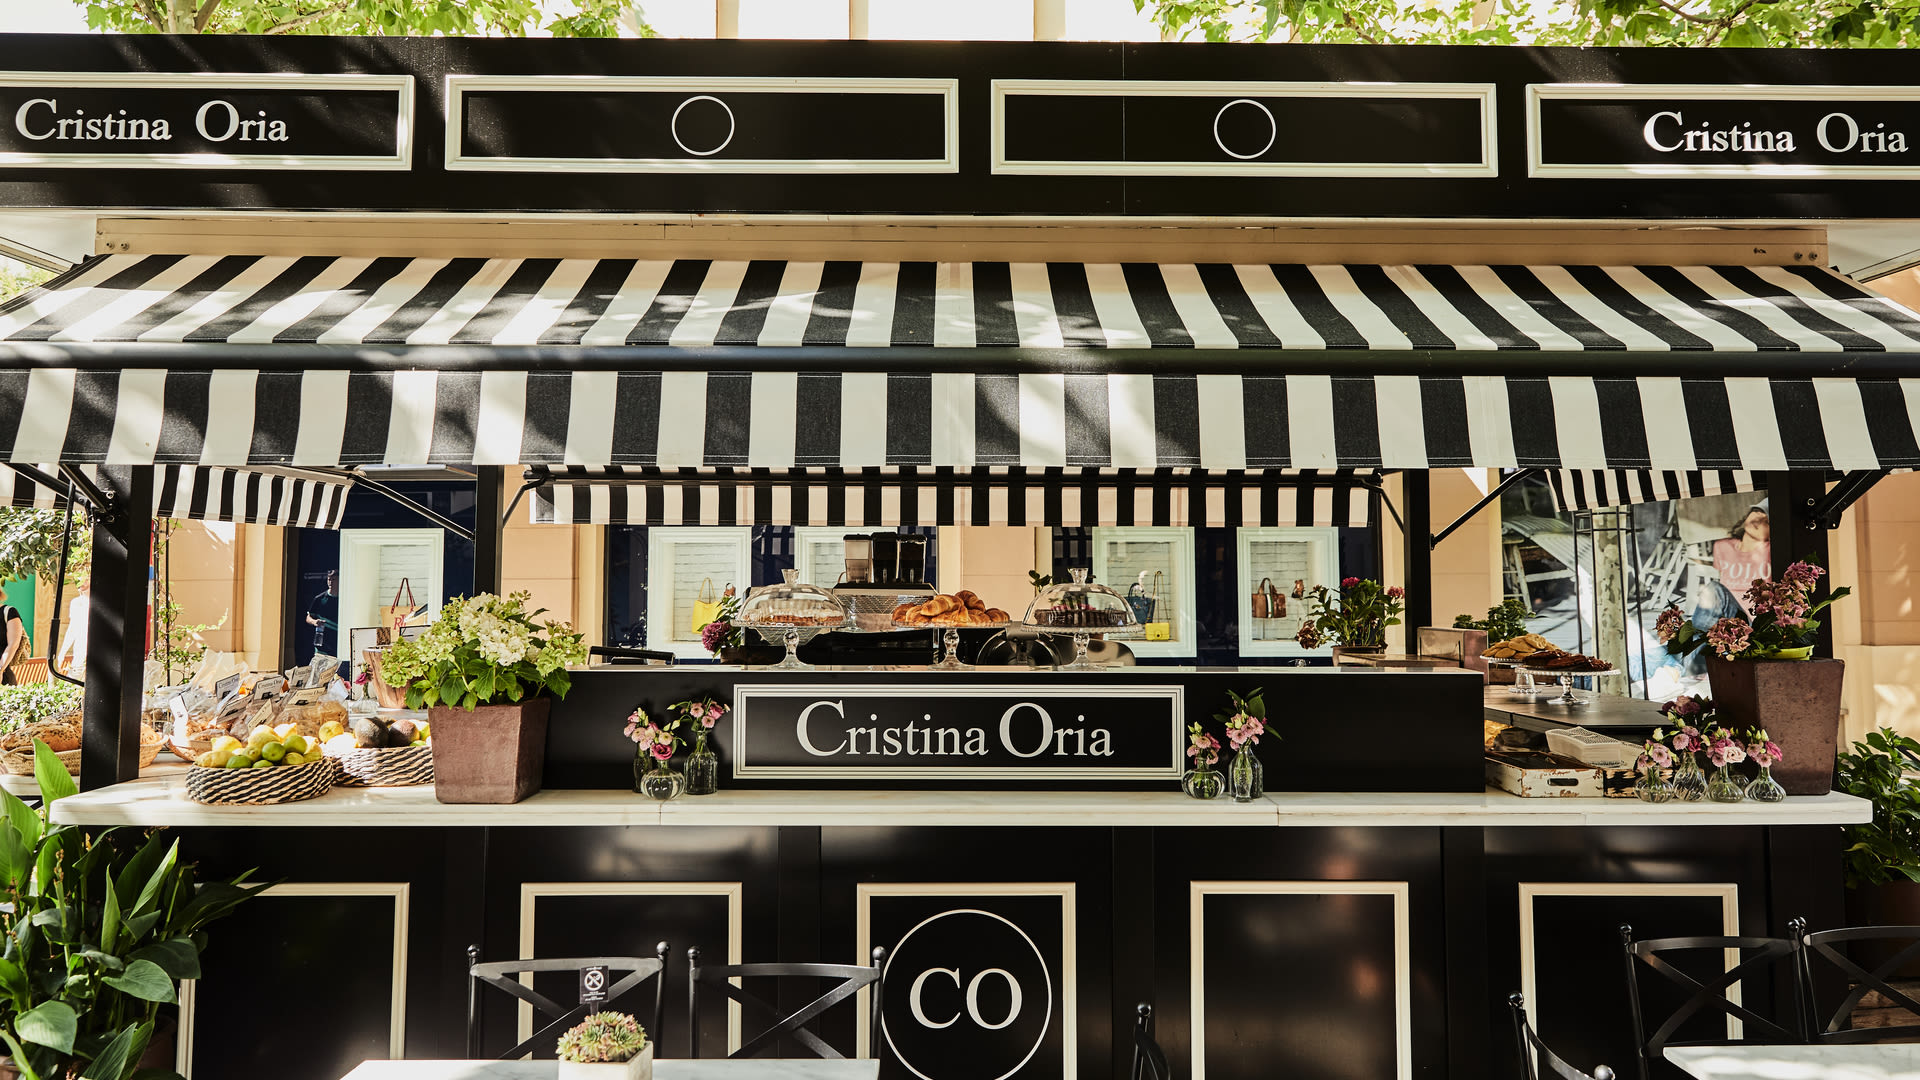 Cristina Oria kiosk Las Rozas Village